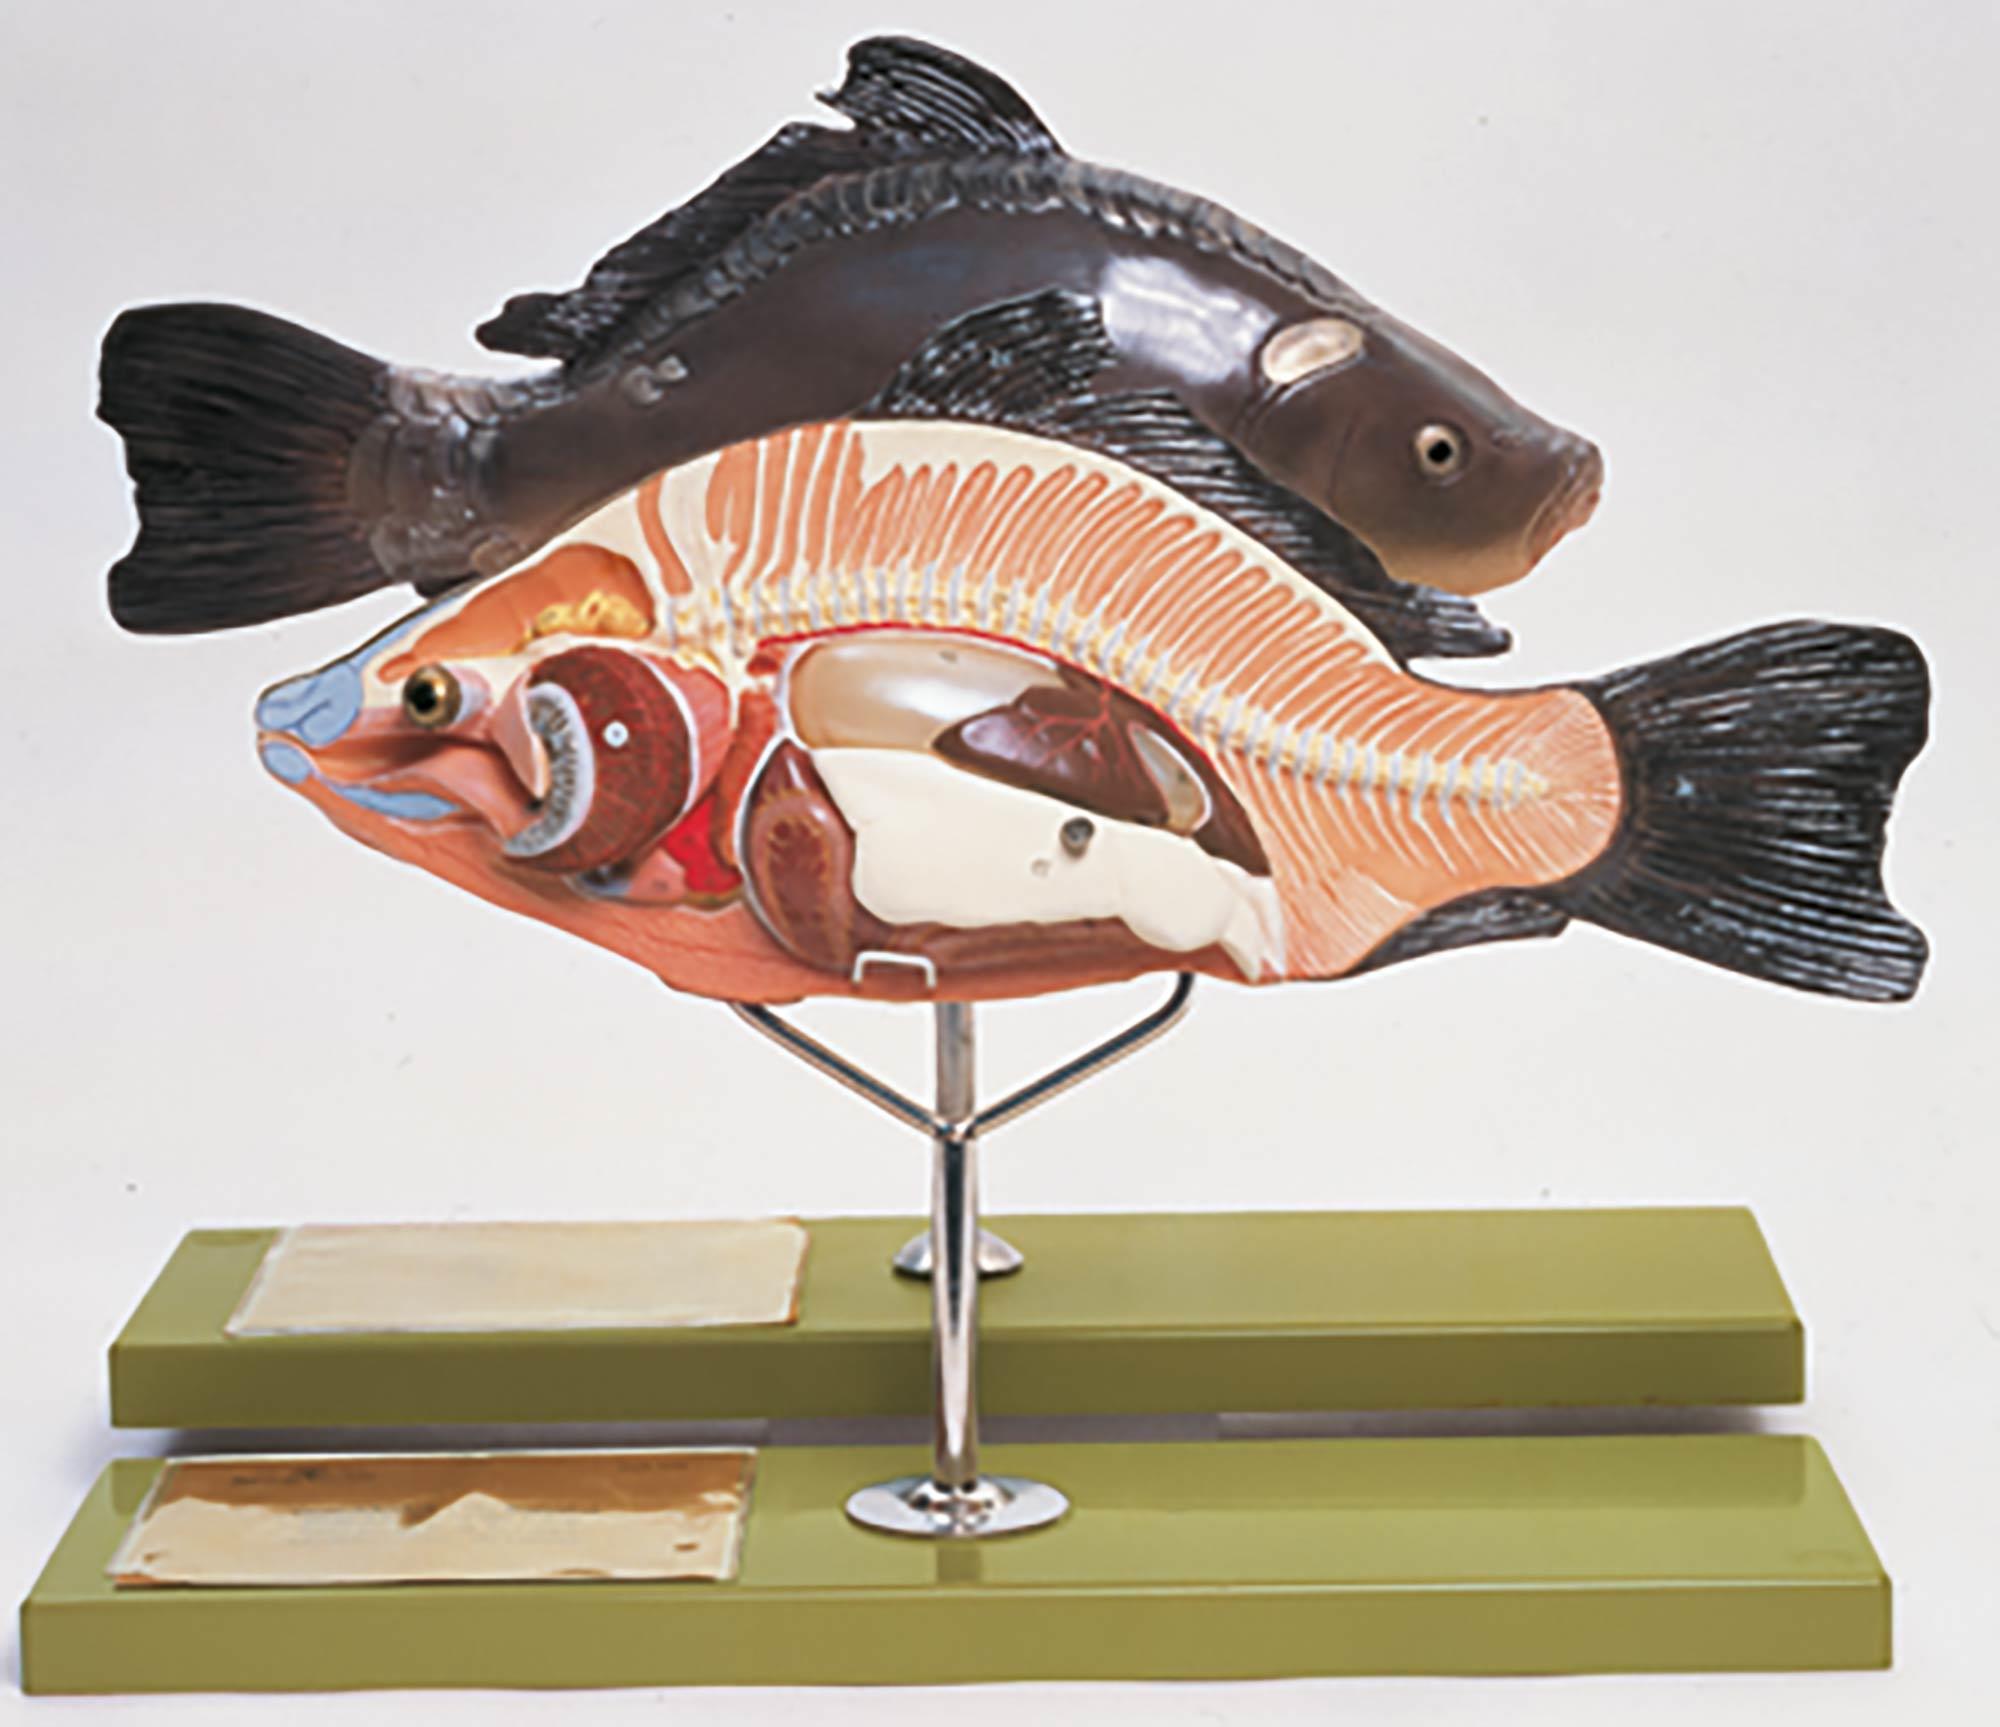 Anatomie eines Knochenfisches - Somso